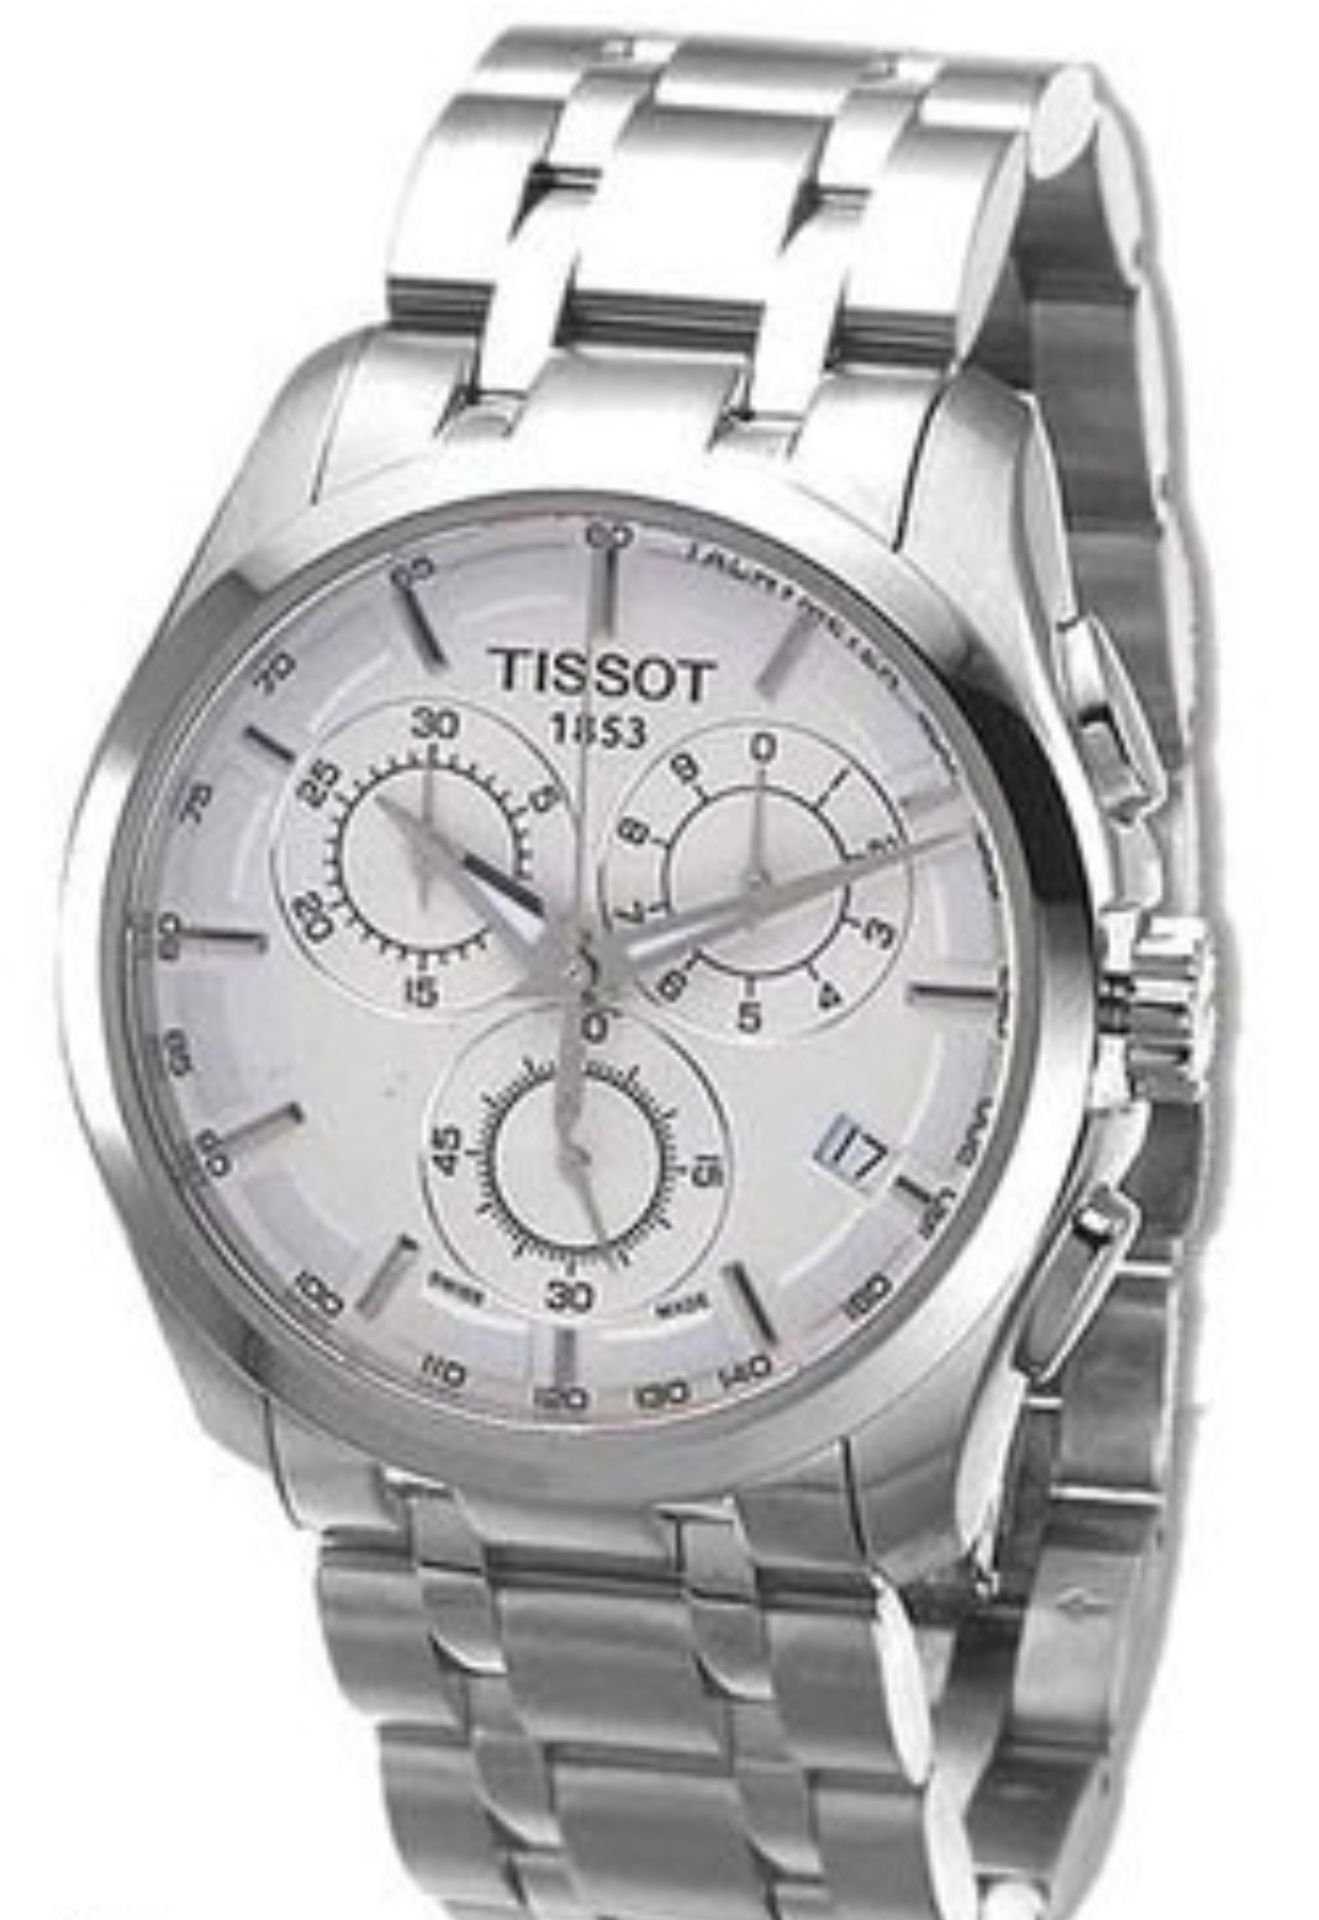 Tissot Men's Couturier 41Mm Steel Bracelet & Case Quartz White Dial Chrono Watch T035.617.11.031.00 - Image 6 of 10